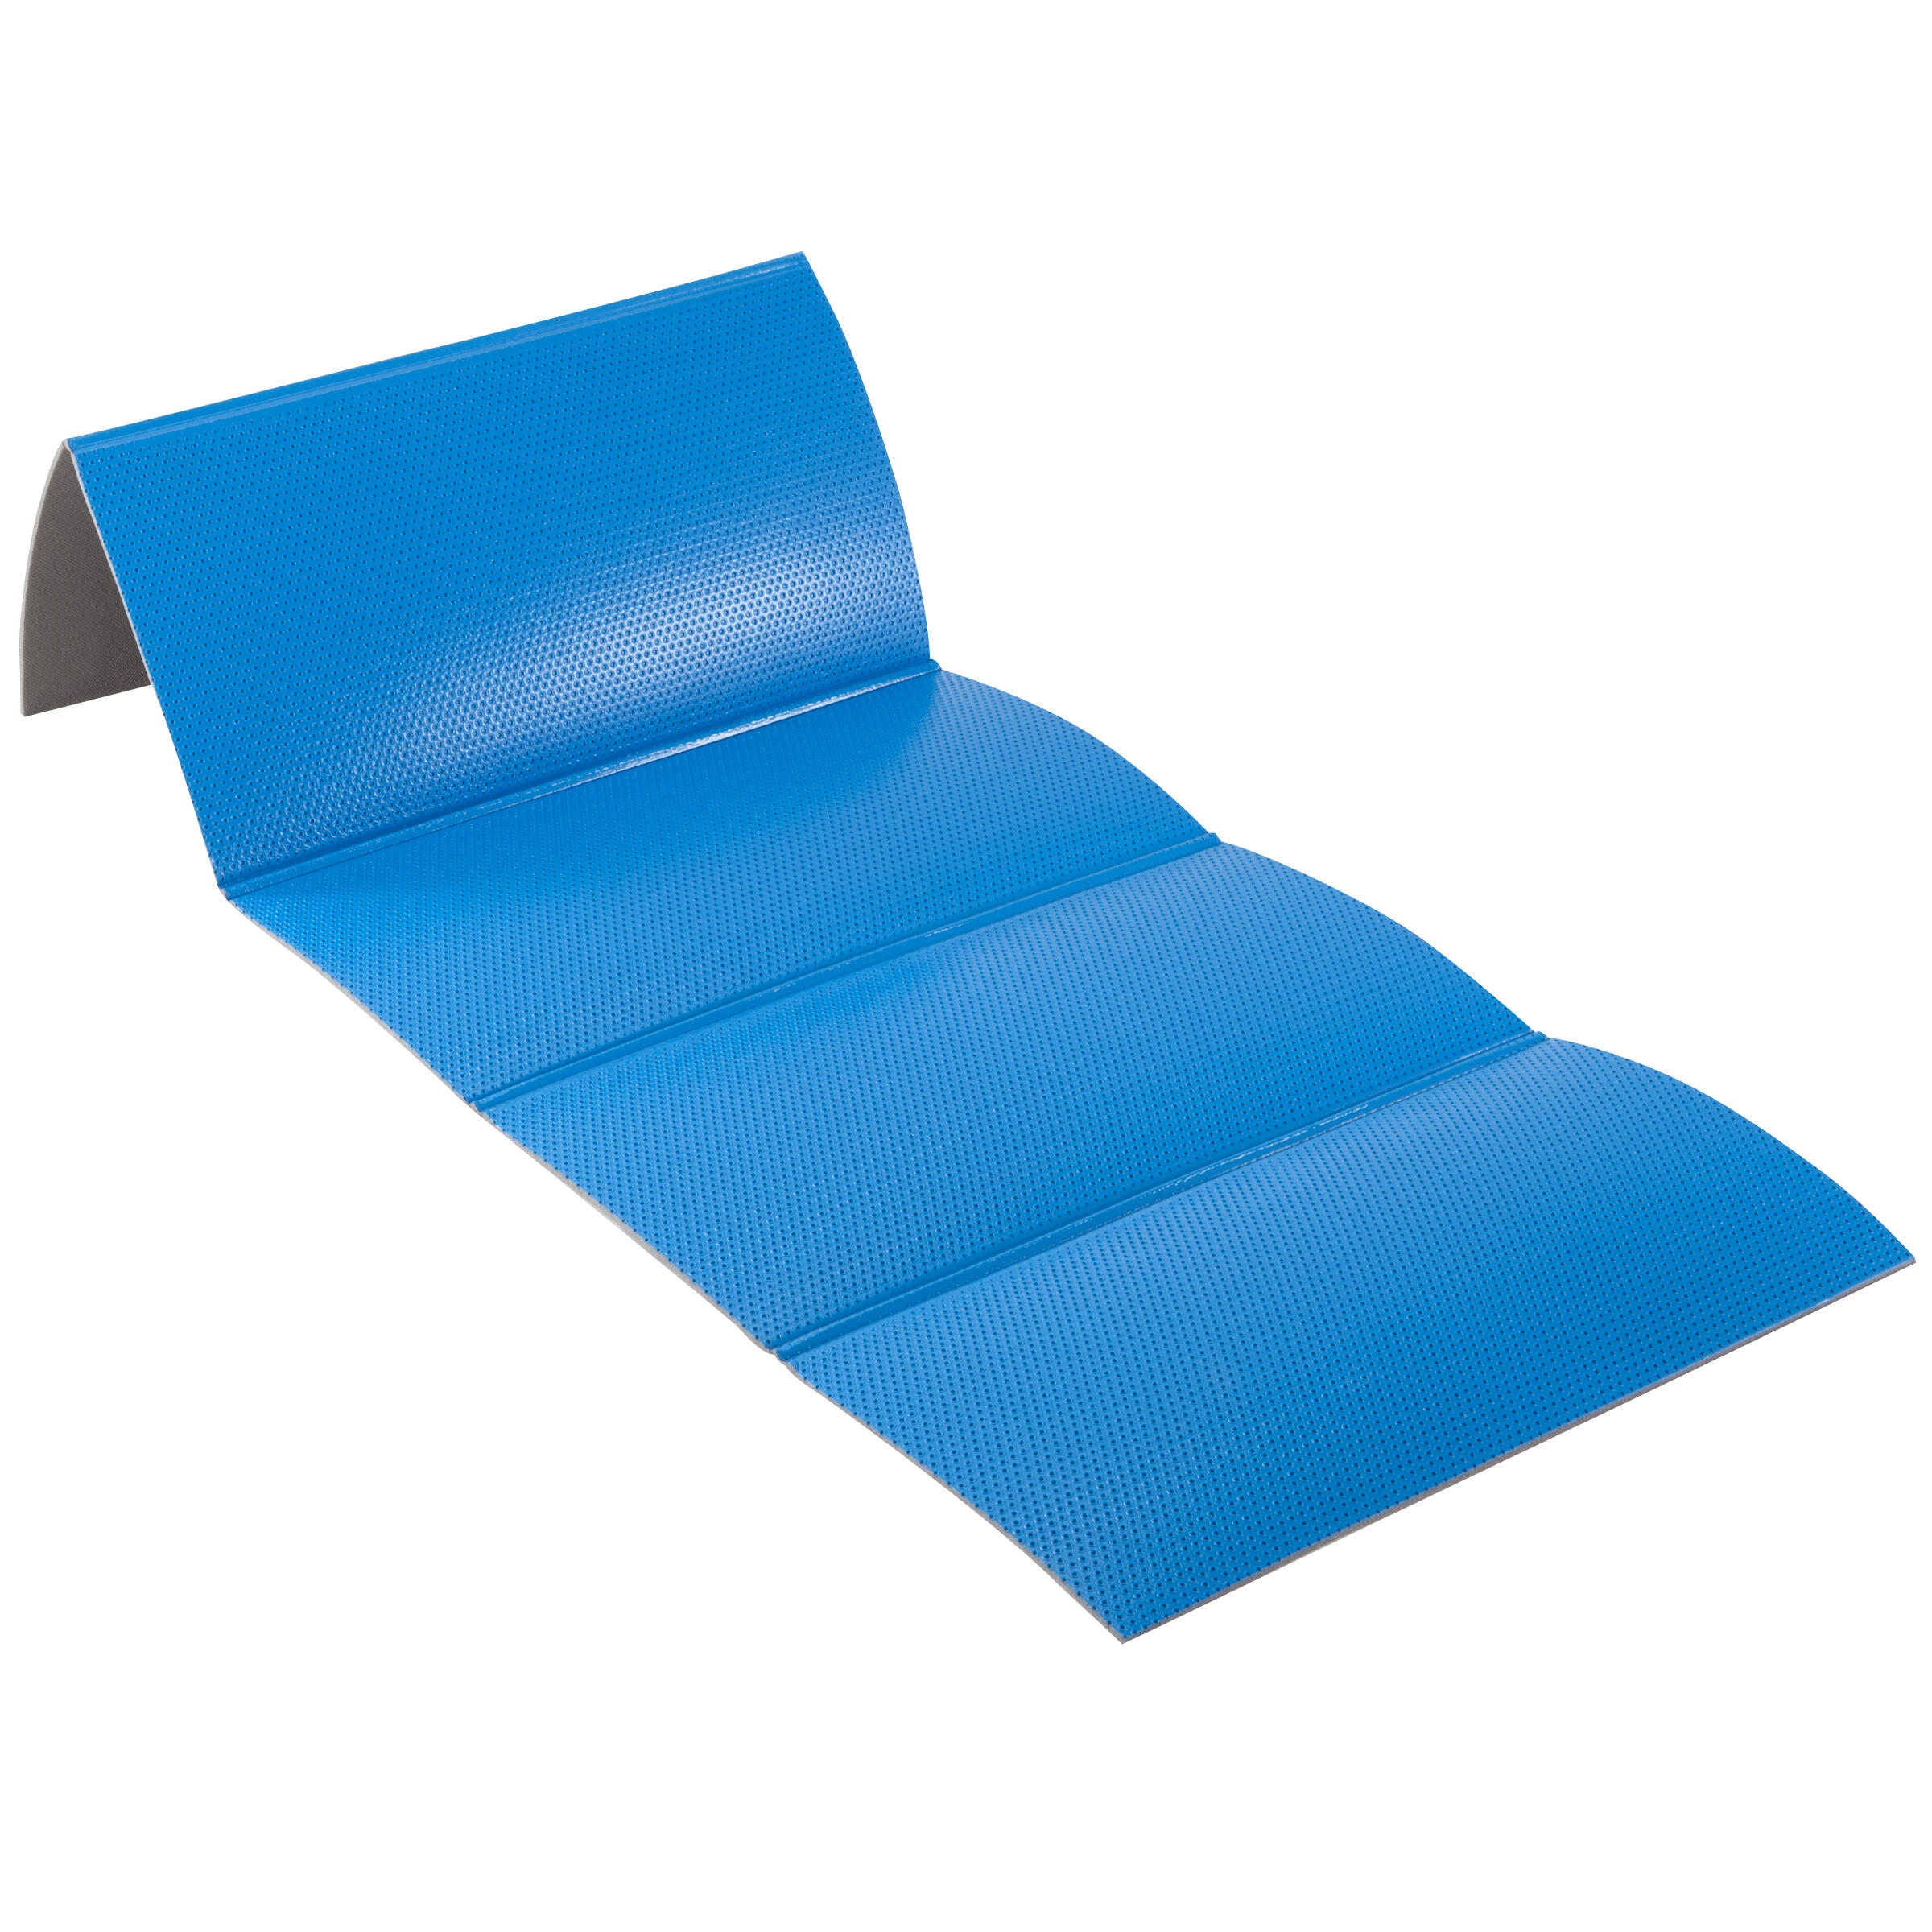 Foldable Shoe Resistant Floor Mat Blue 160 Cm X 60 Cm X 7 Mm